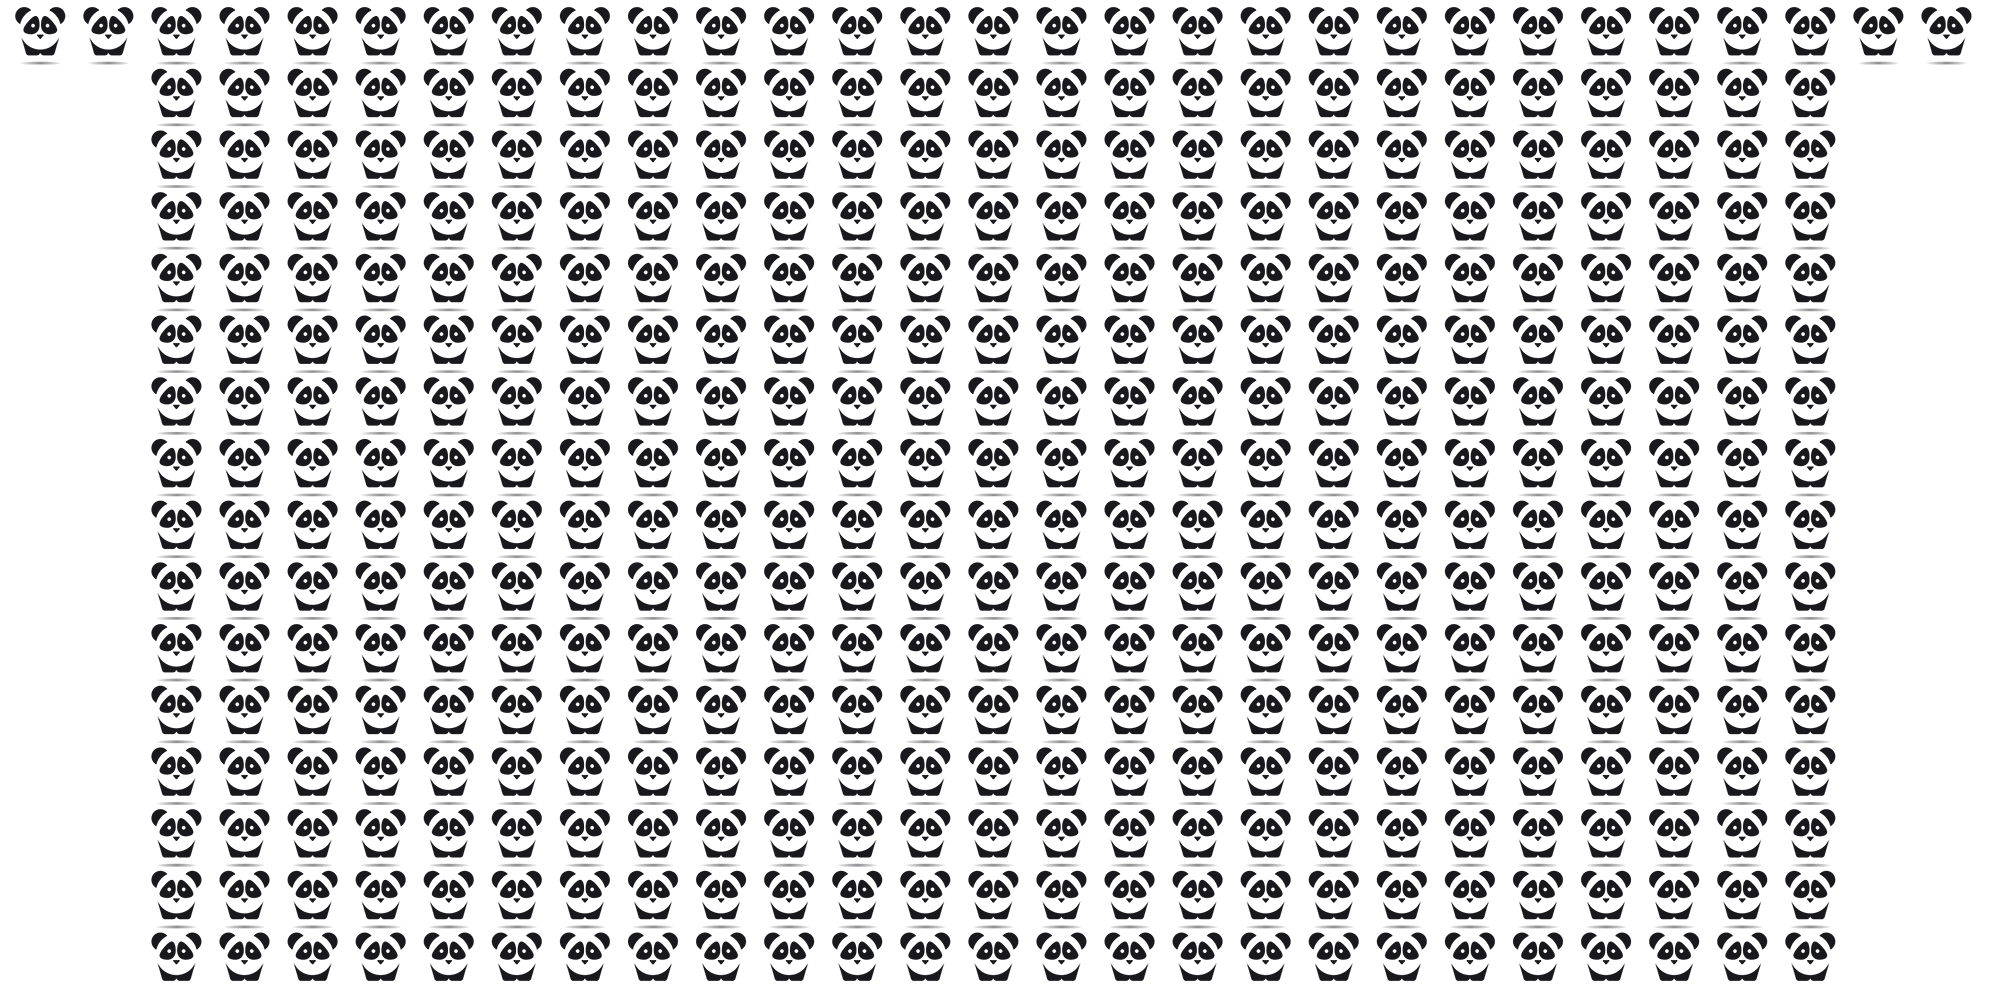 Four hundred and four pandas